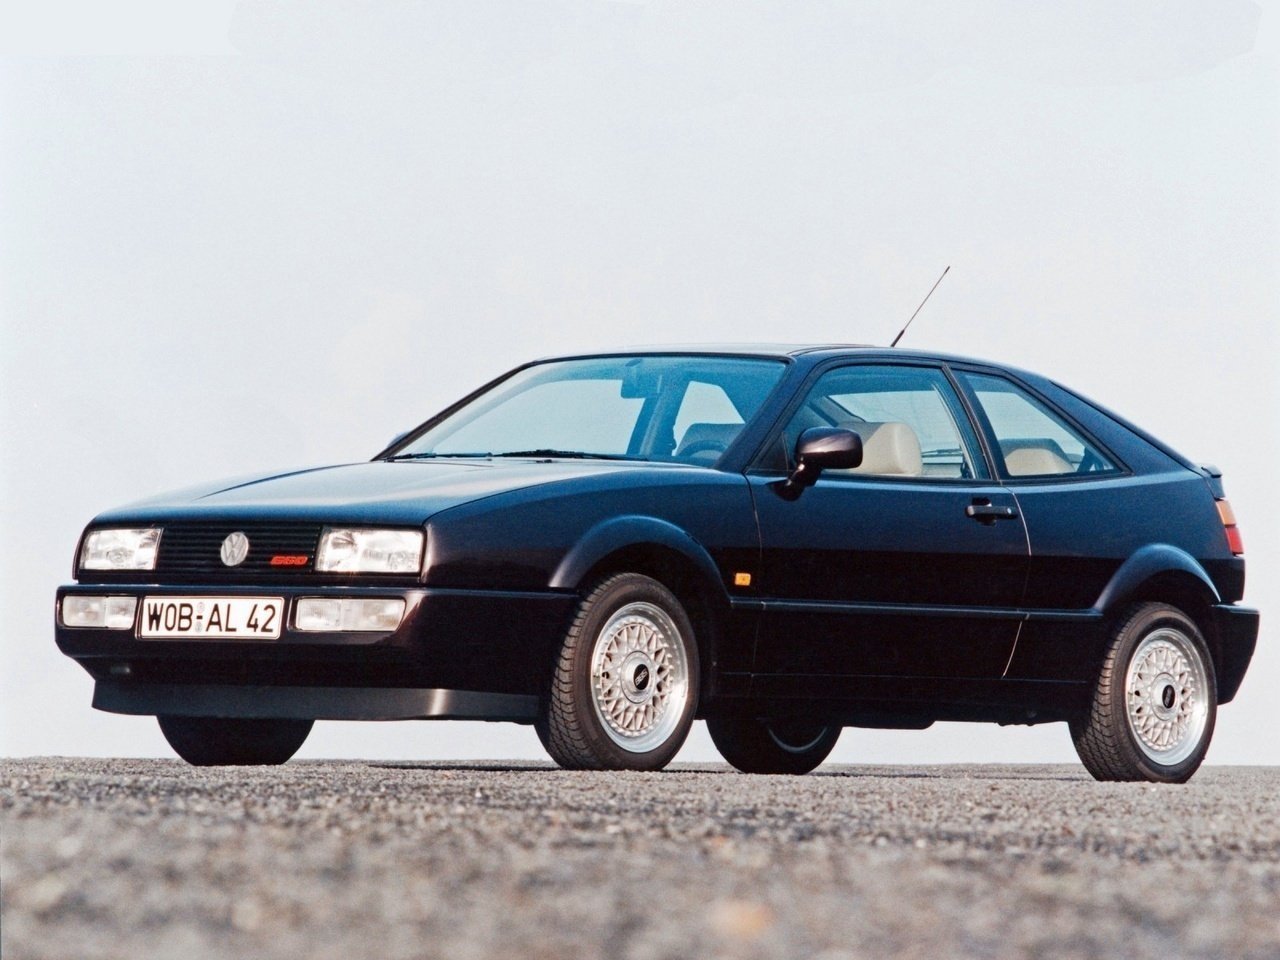 Расход газа шести комплектаций хэтчбека три двери Volkswagen Corrado. Разница стоимости заправки газом и бензином. Автономный пробег до и после установки ГБО.